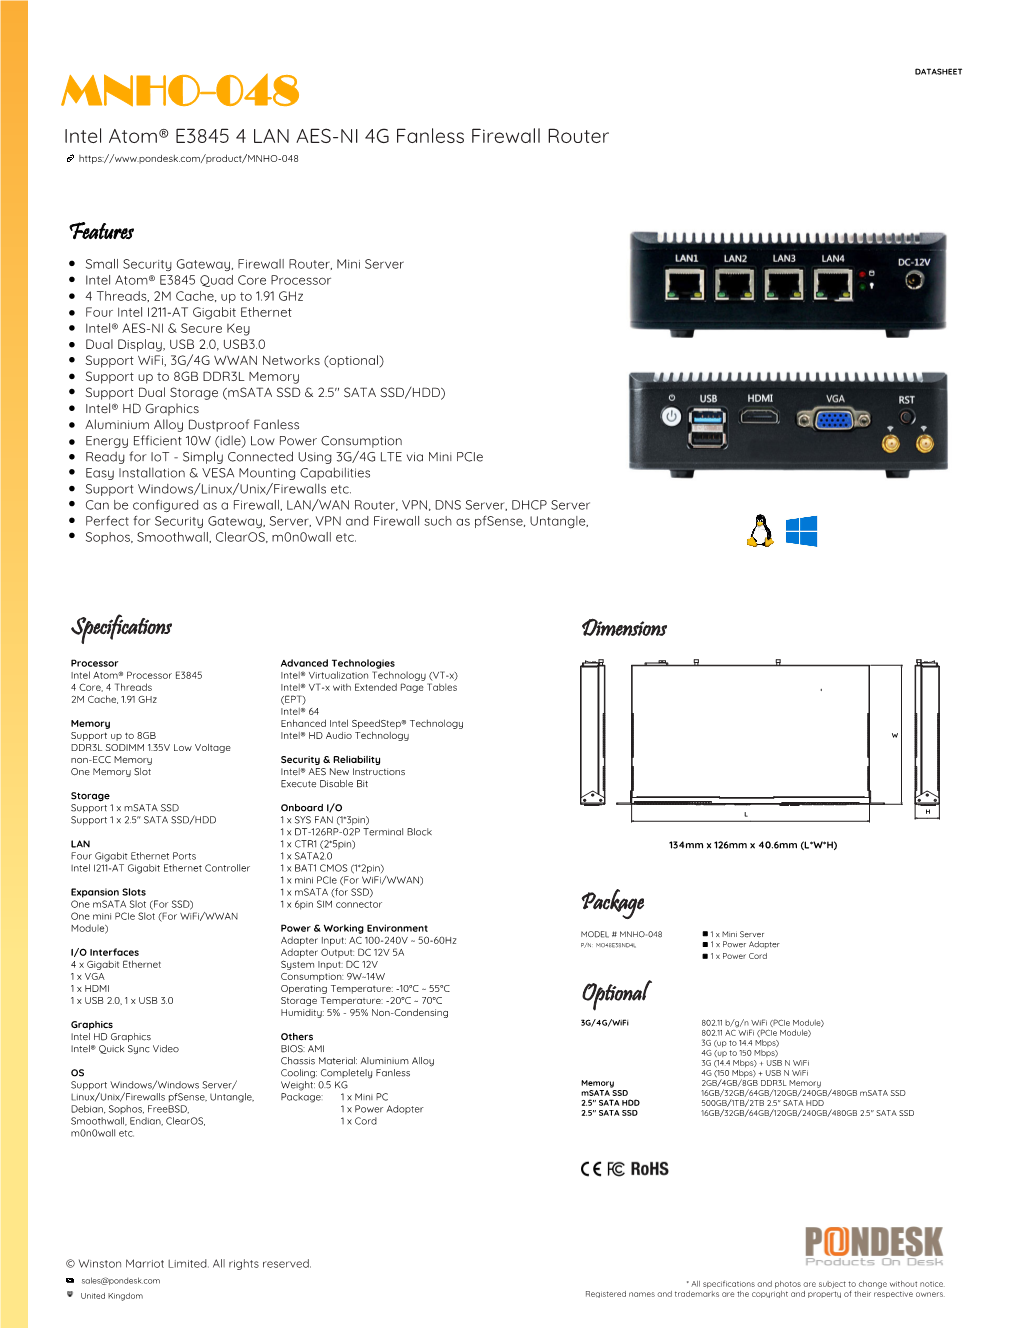 MNHO-048 DATASHEET Intel Atom® E3845 4 LAN AES-NI 4G Fanless Firewall Router